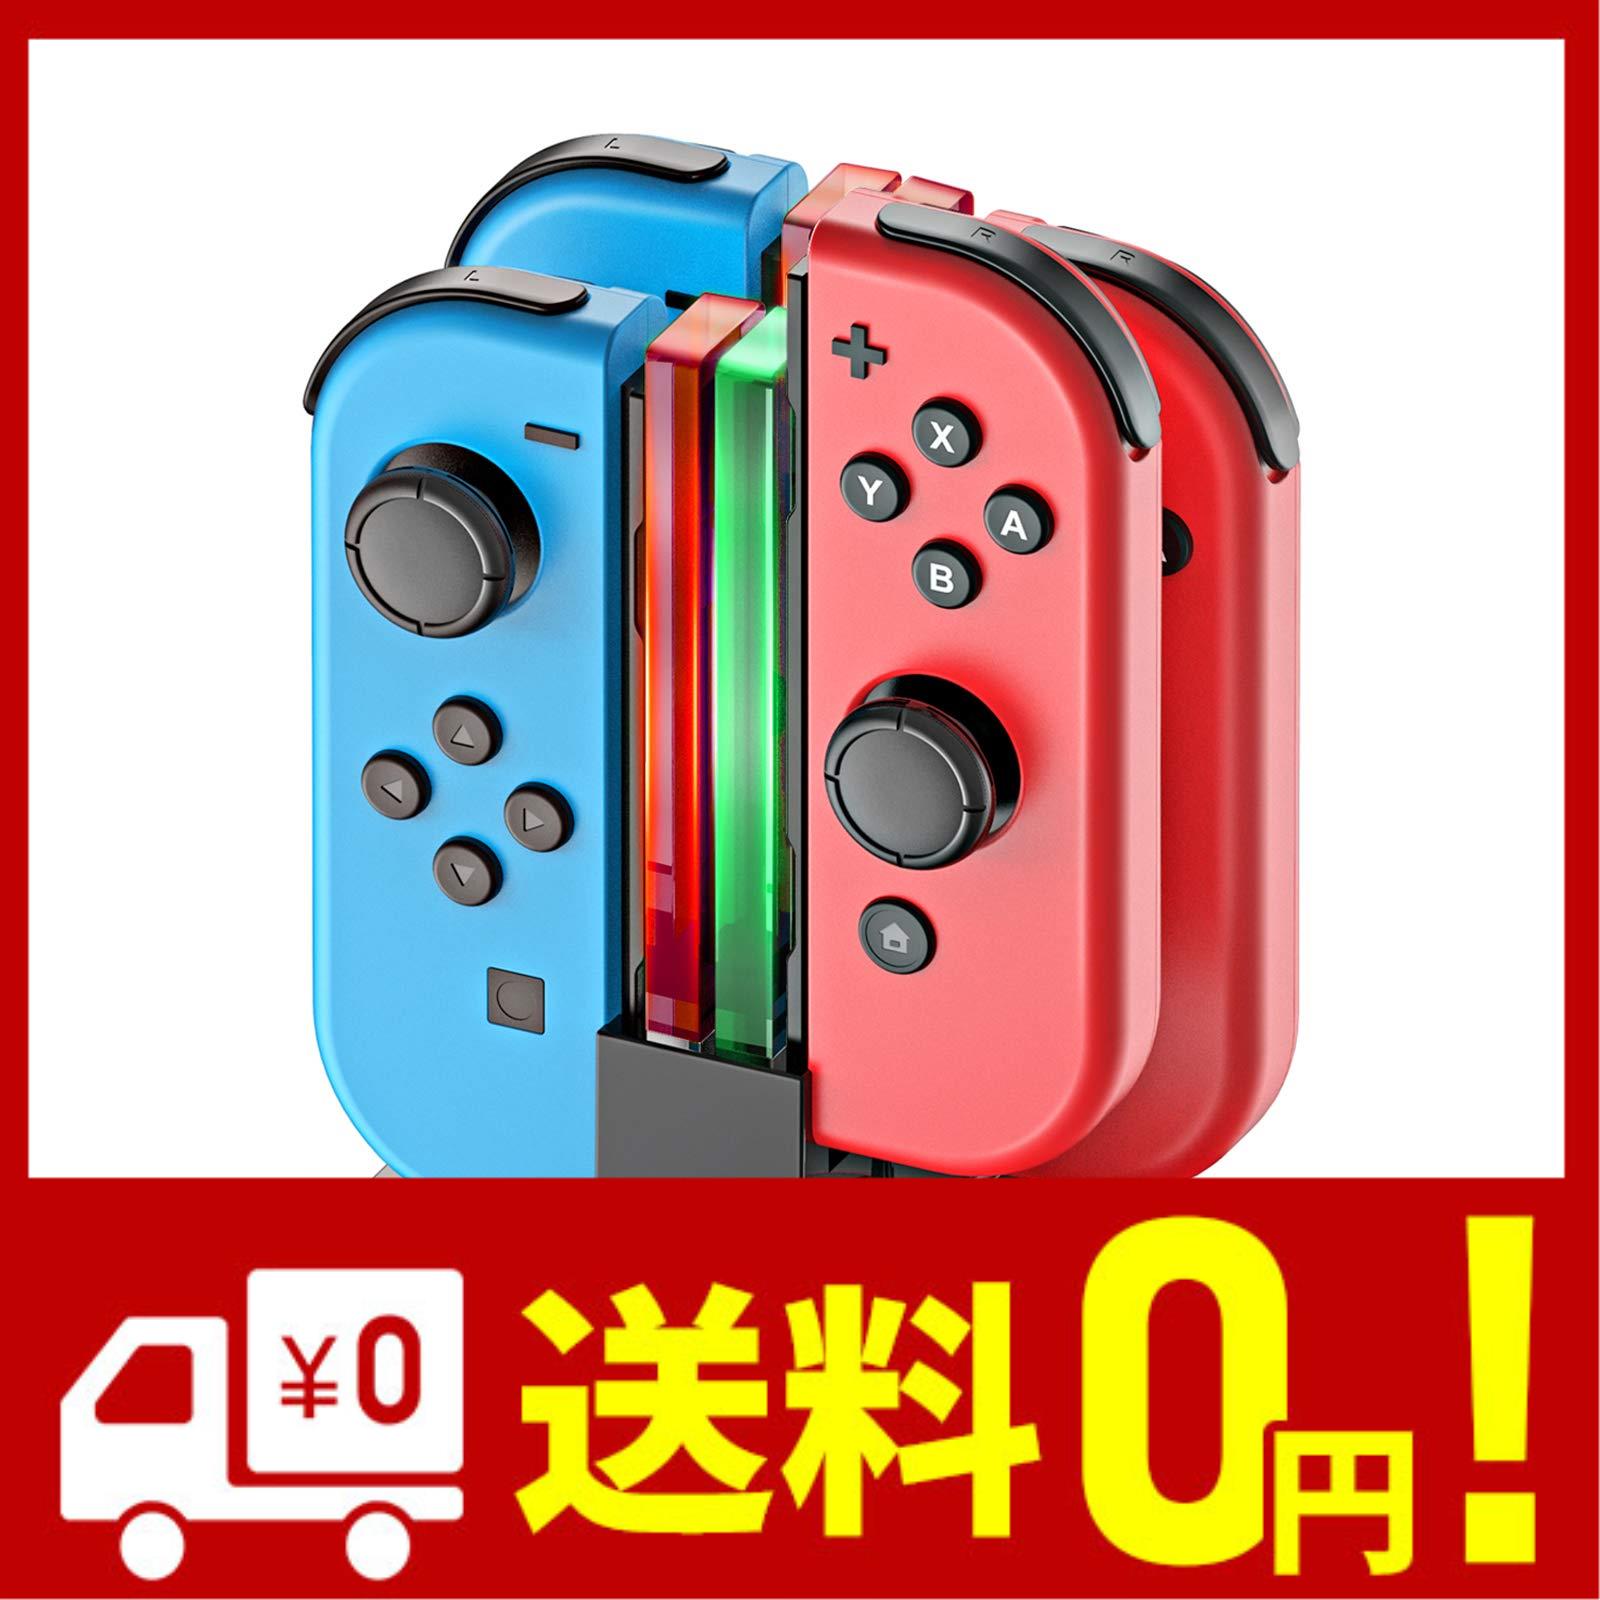 ジョイコン Joy-Con 充電 スタンド Nintendo Switch用 4台同時充電可能 KINGTOP ニンテンドー スイッチ 充電ホルダー チャージャー 充電